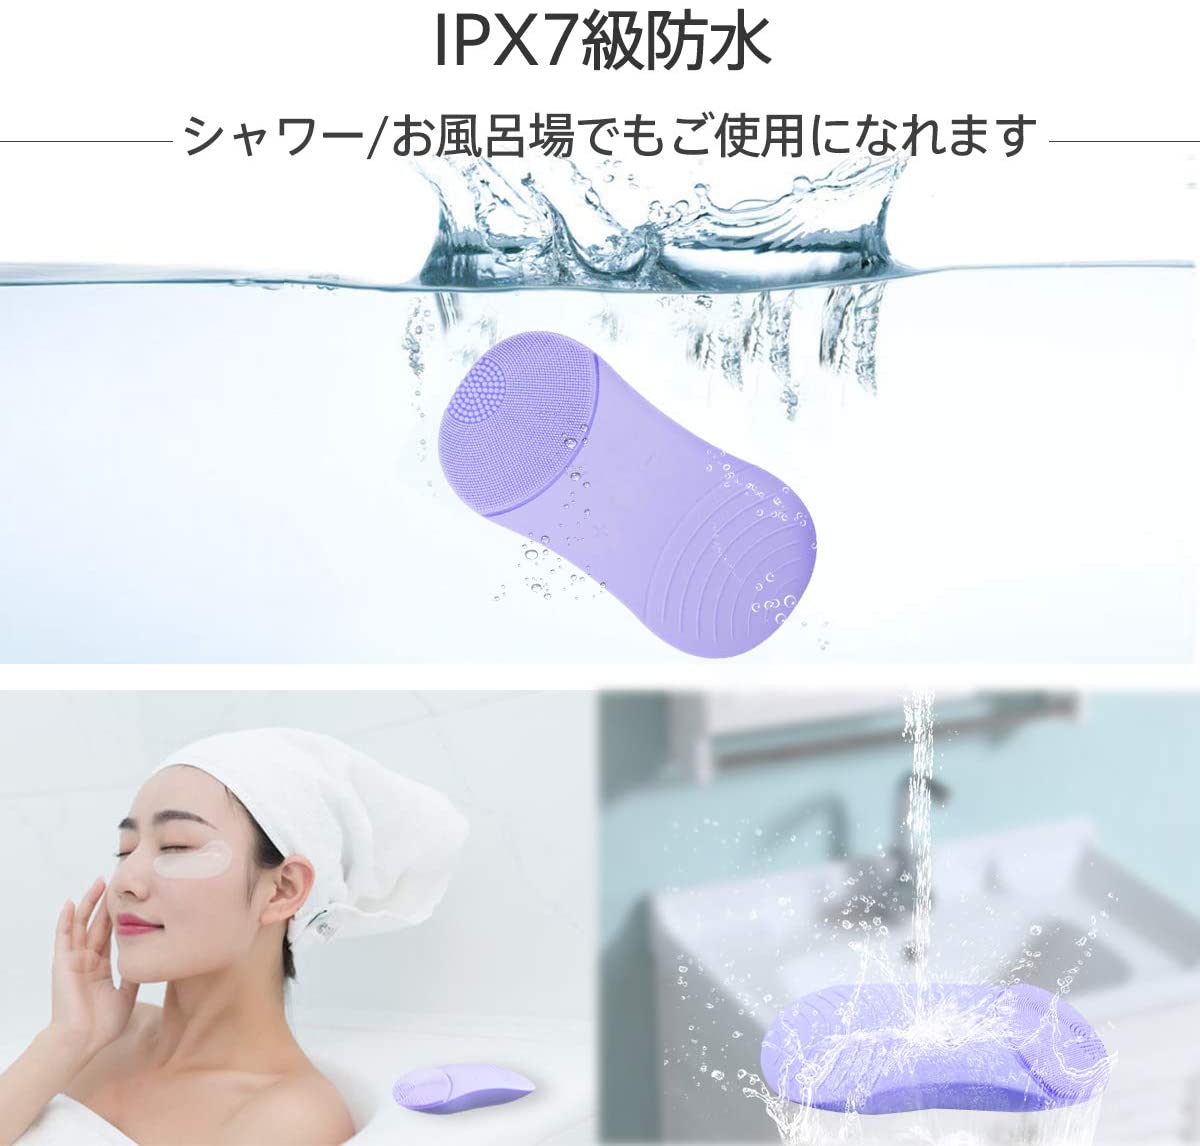 SIXPLUS(シックスプラス) 多機能洗顔器の商品画像サムネ6 